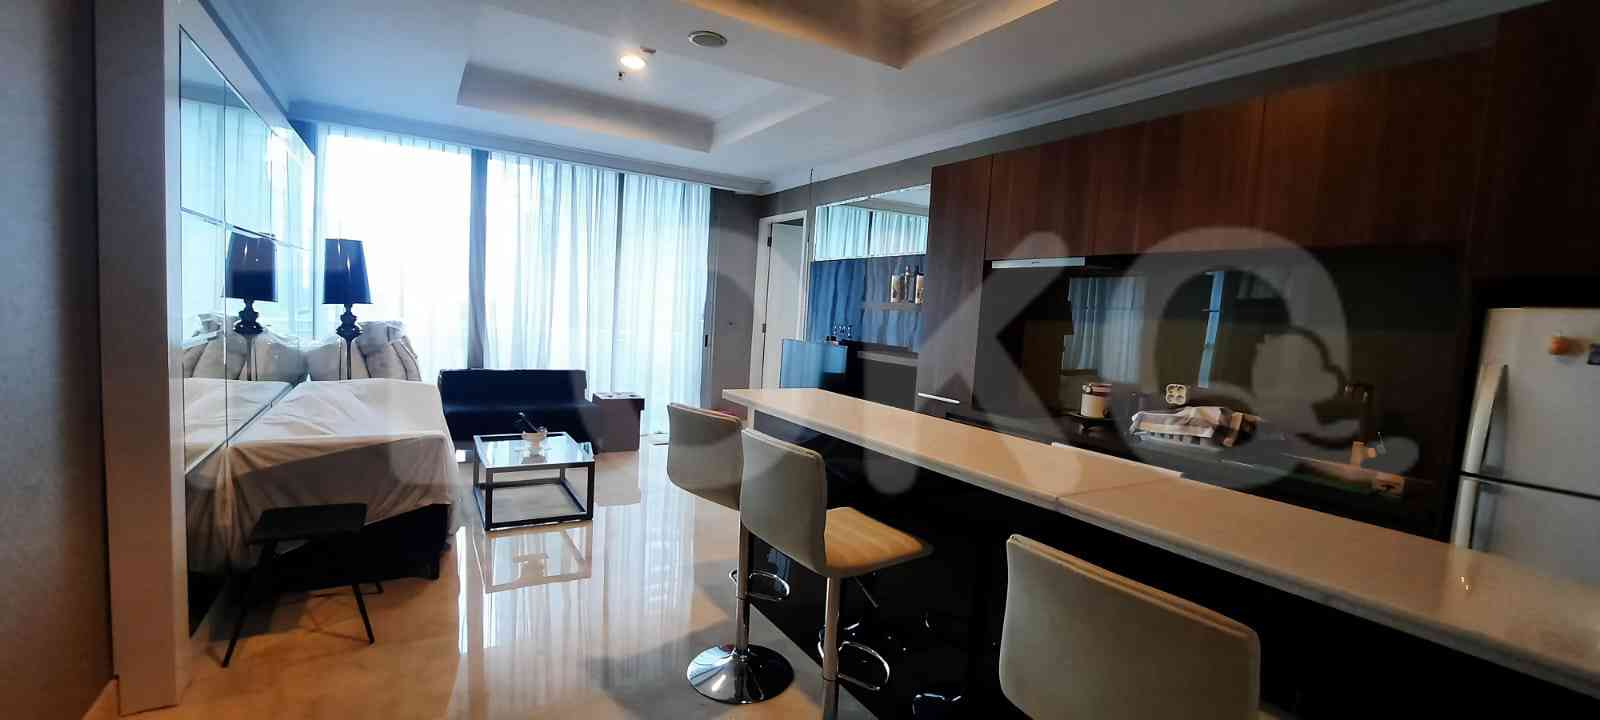 1 Bedroom on 15th Floor for Rent in Residence 8 Senopati - fseadd 4